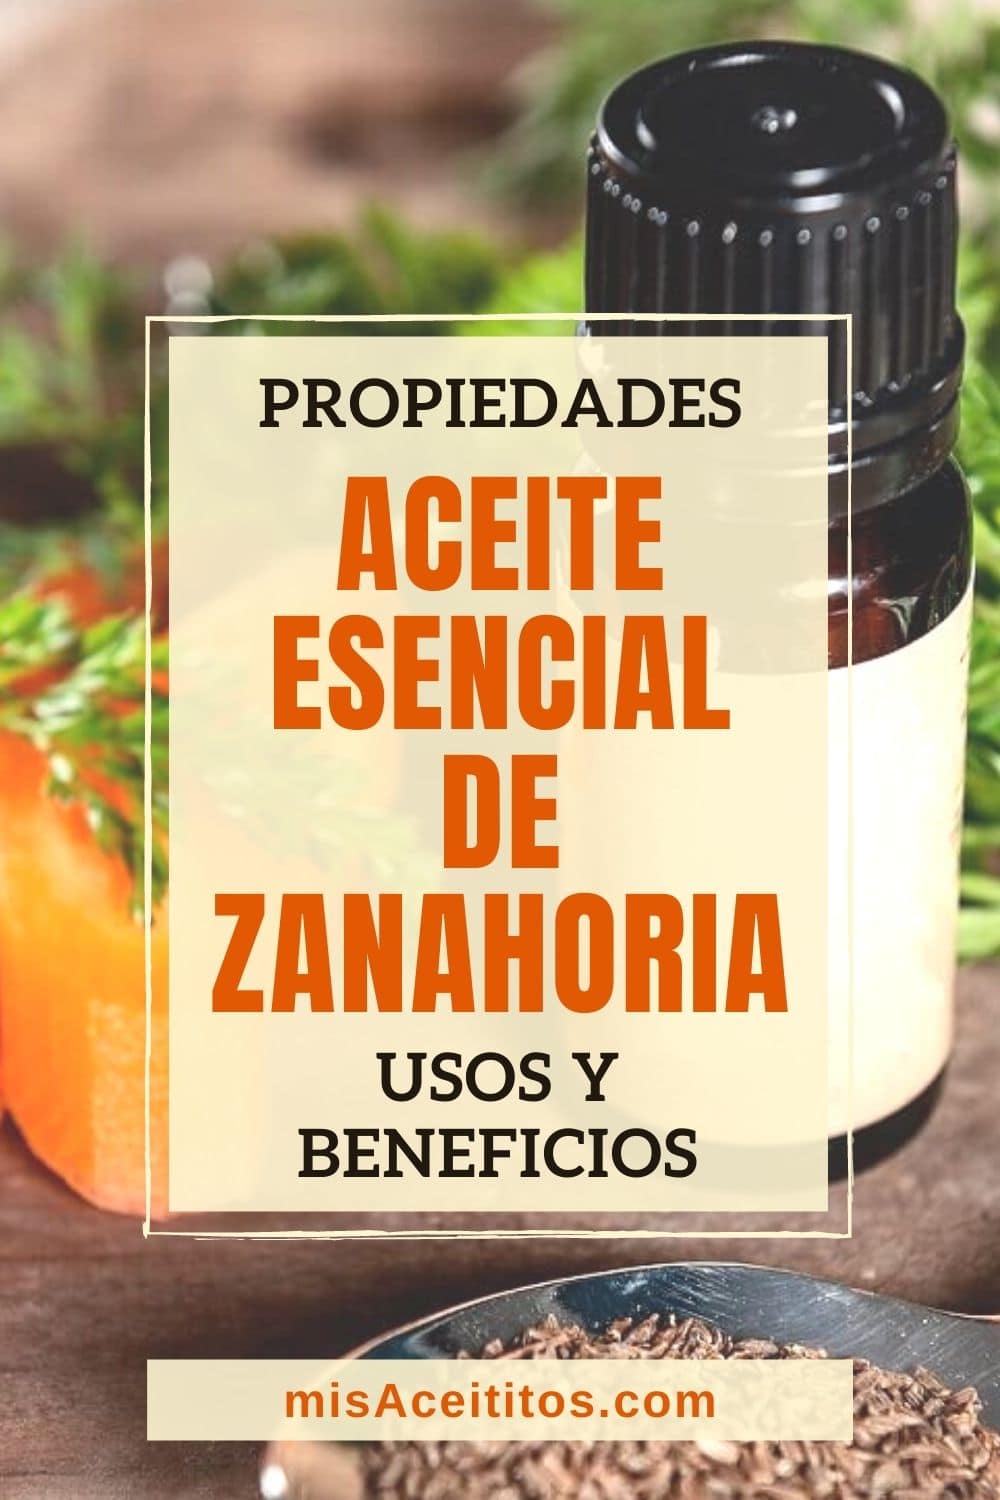 Aceite Esencial de Zanahoria – Usos y Beneficios